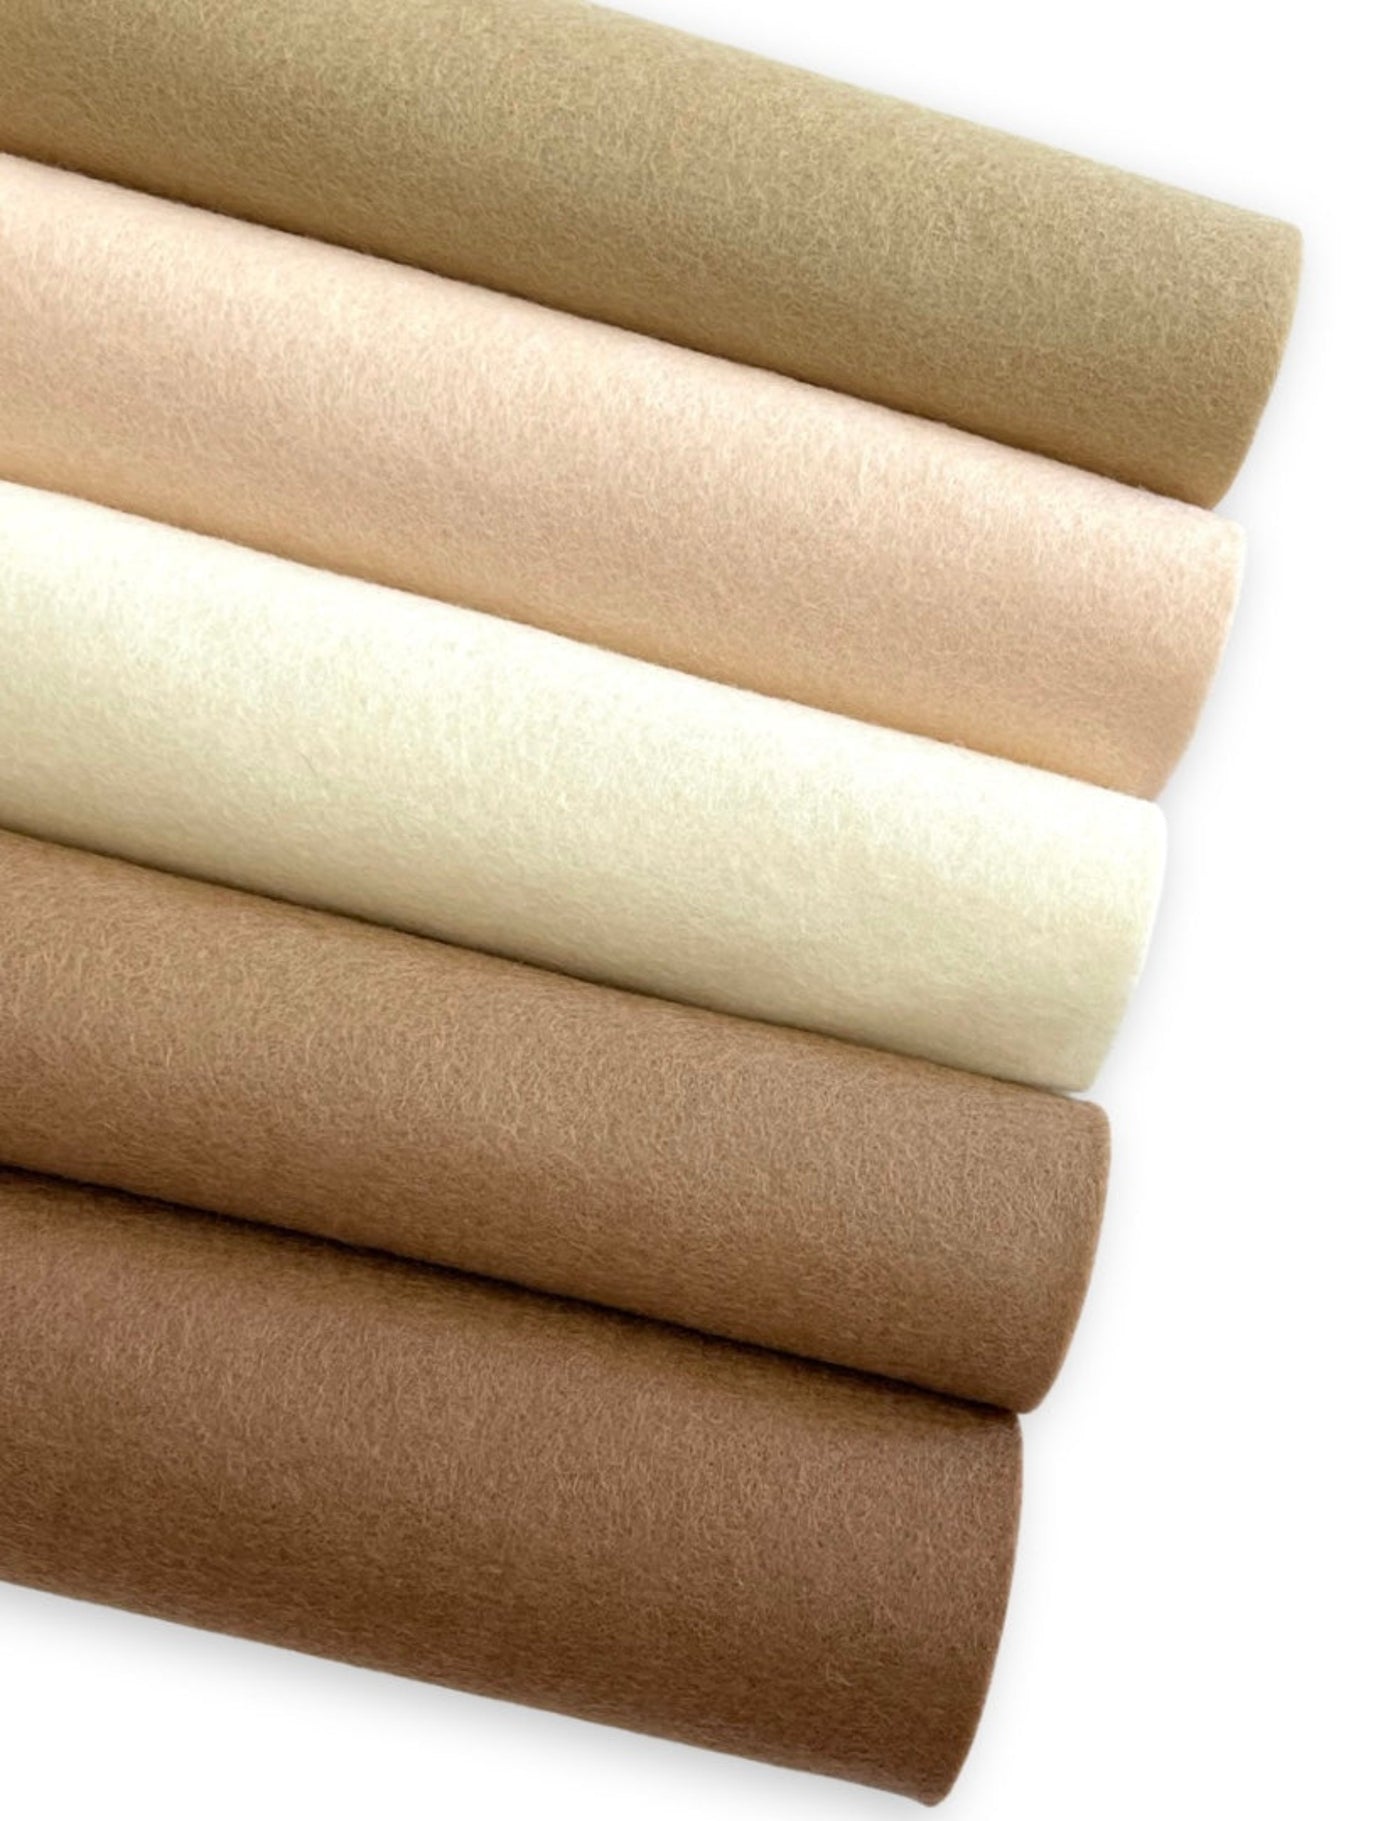 5 Sheet Natural Skin Wool Felt Bundle